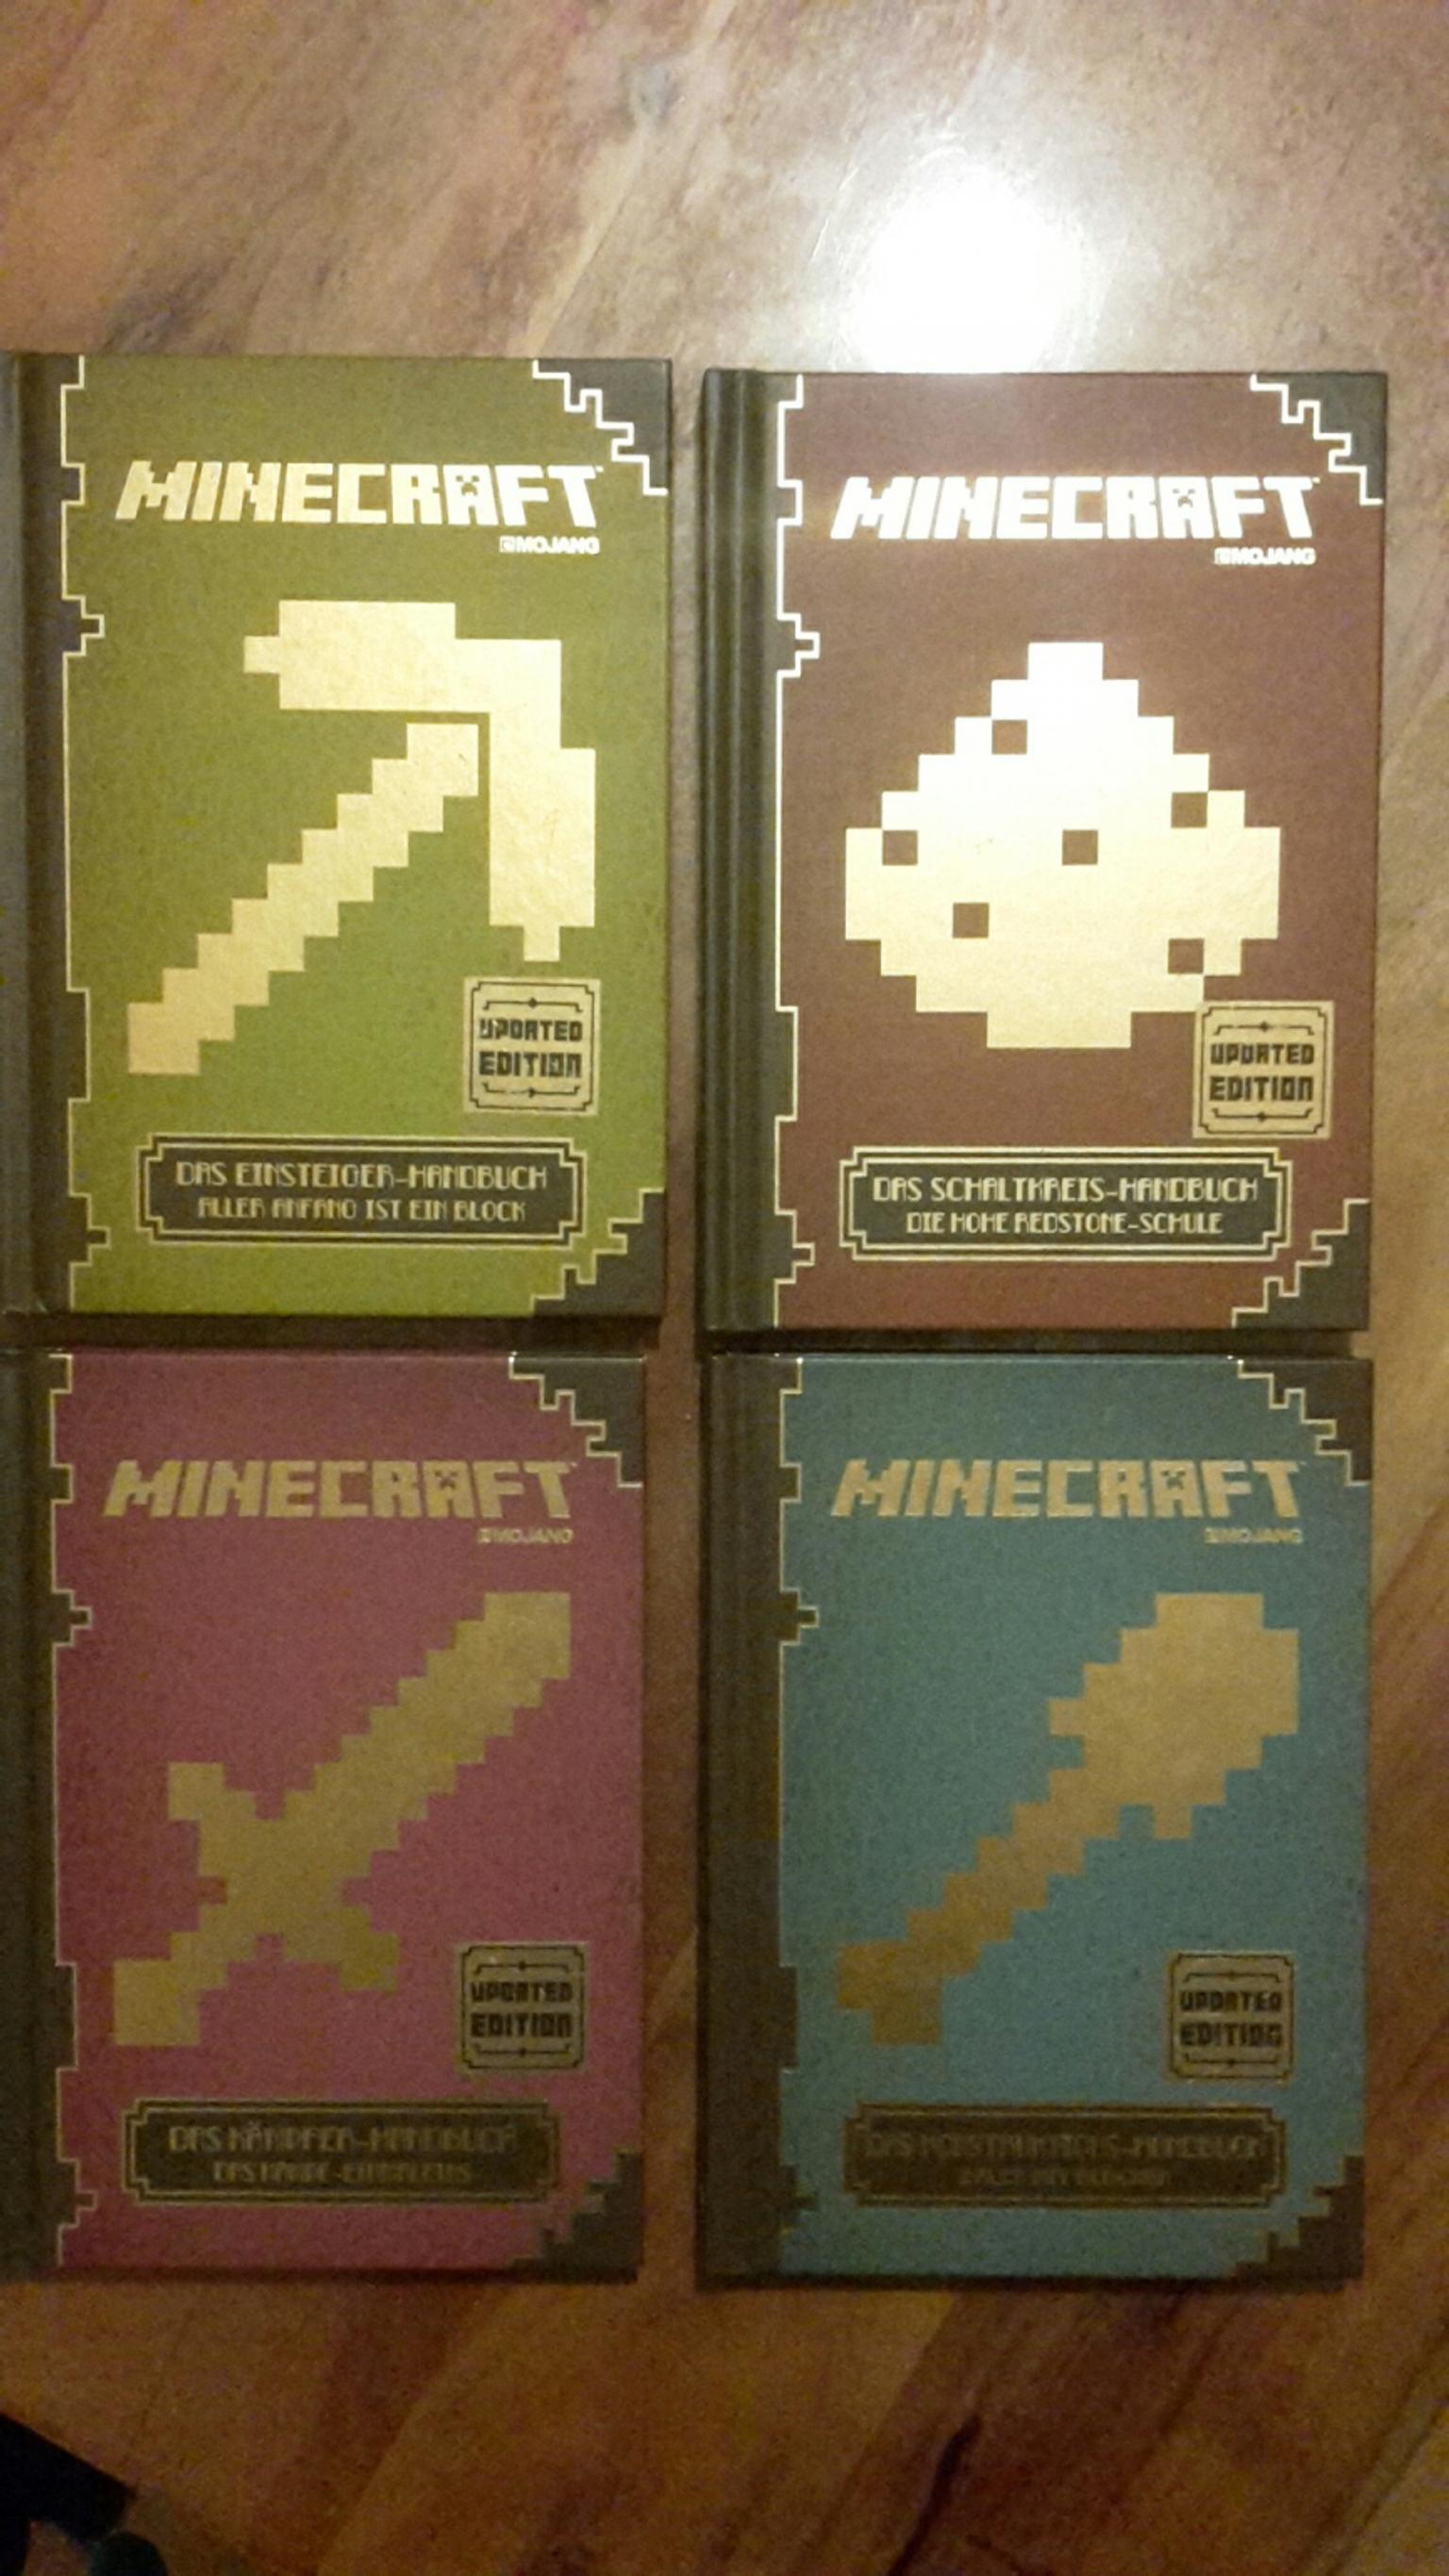 Das Einsteiger-Handbuch Aller Anfang ist ein Block Minecraft